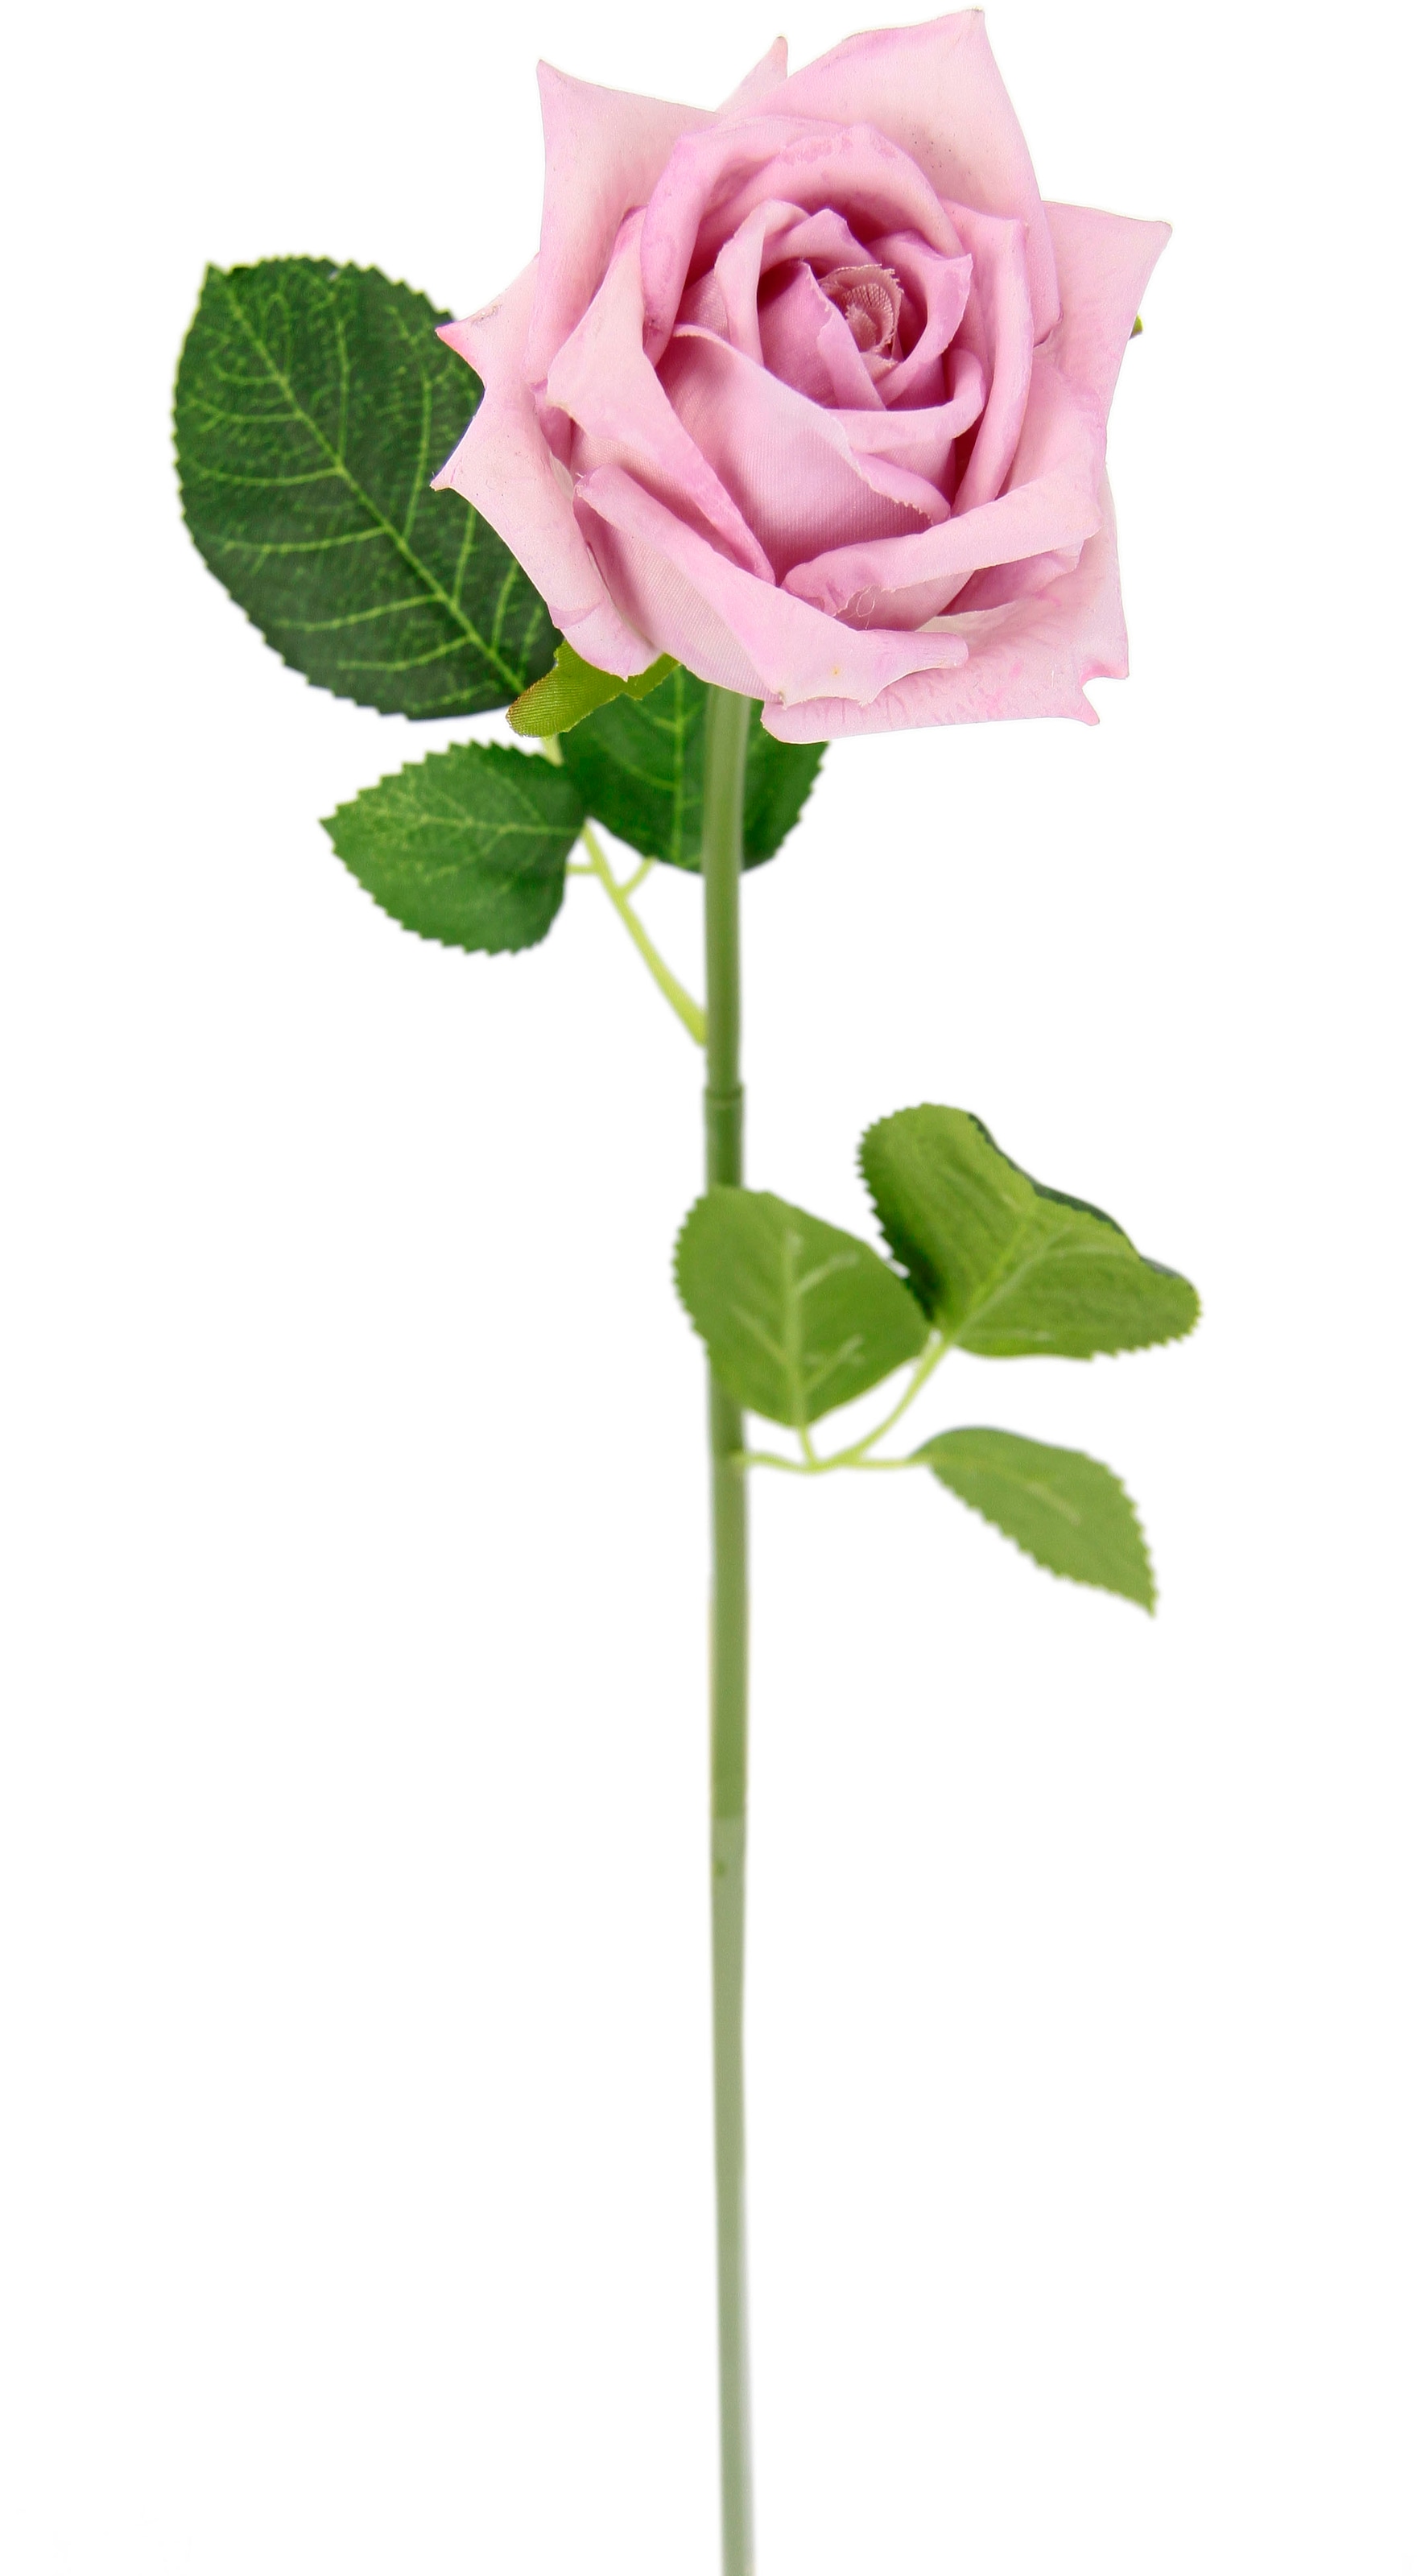 günstig kaufen Bouquet, I.GE.A. Rosen, 5er Kunstzweig, »Rose«, künstliche Kunstrose Seidenrosen, Set Kunstblume